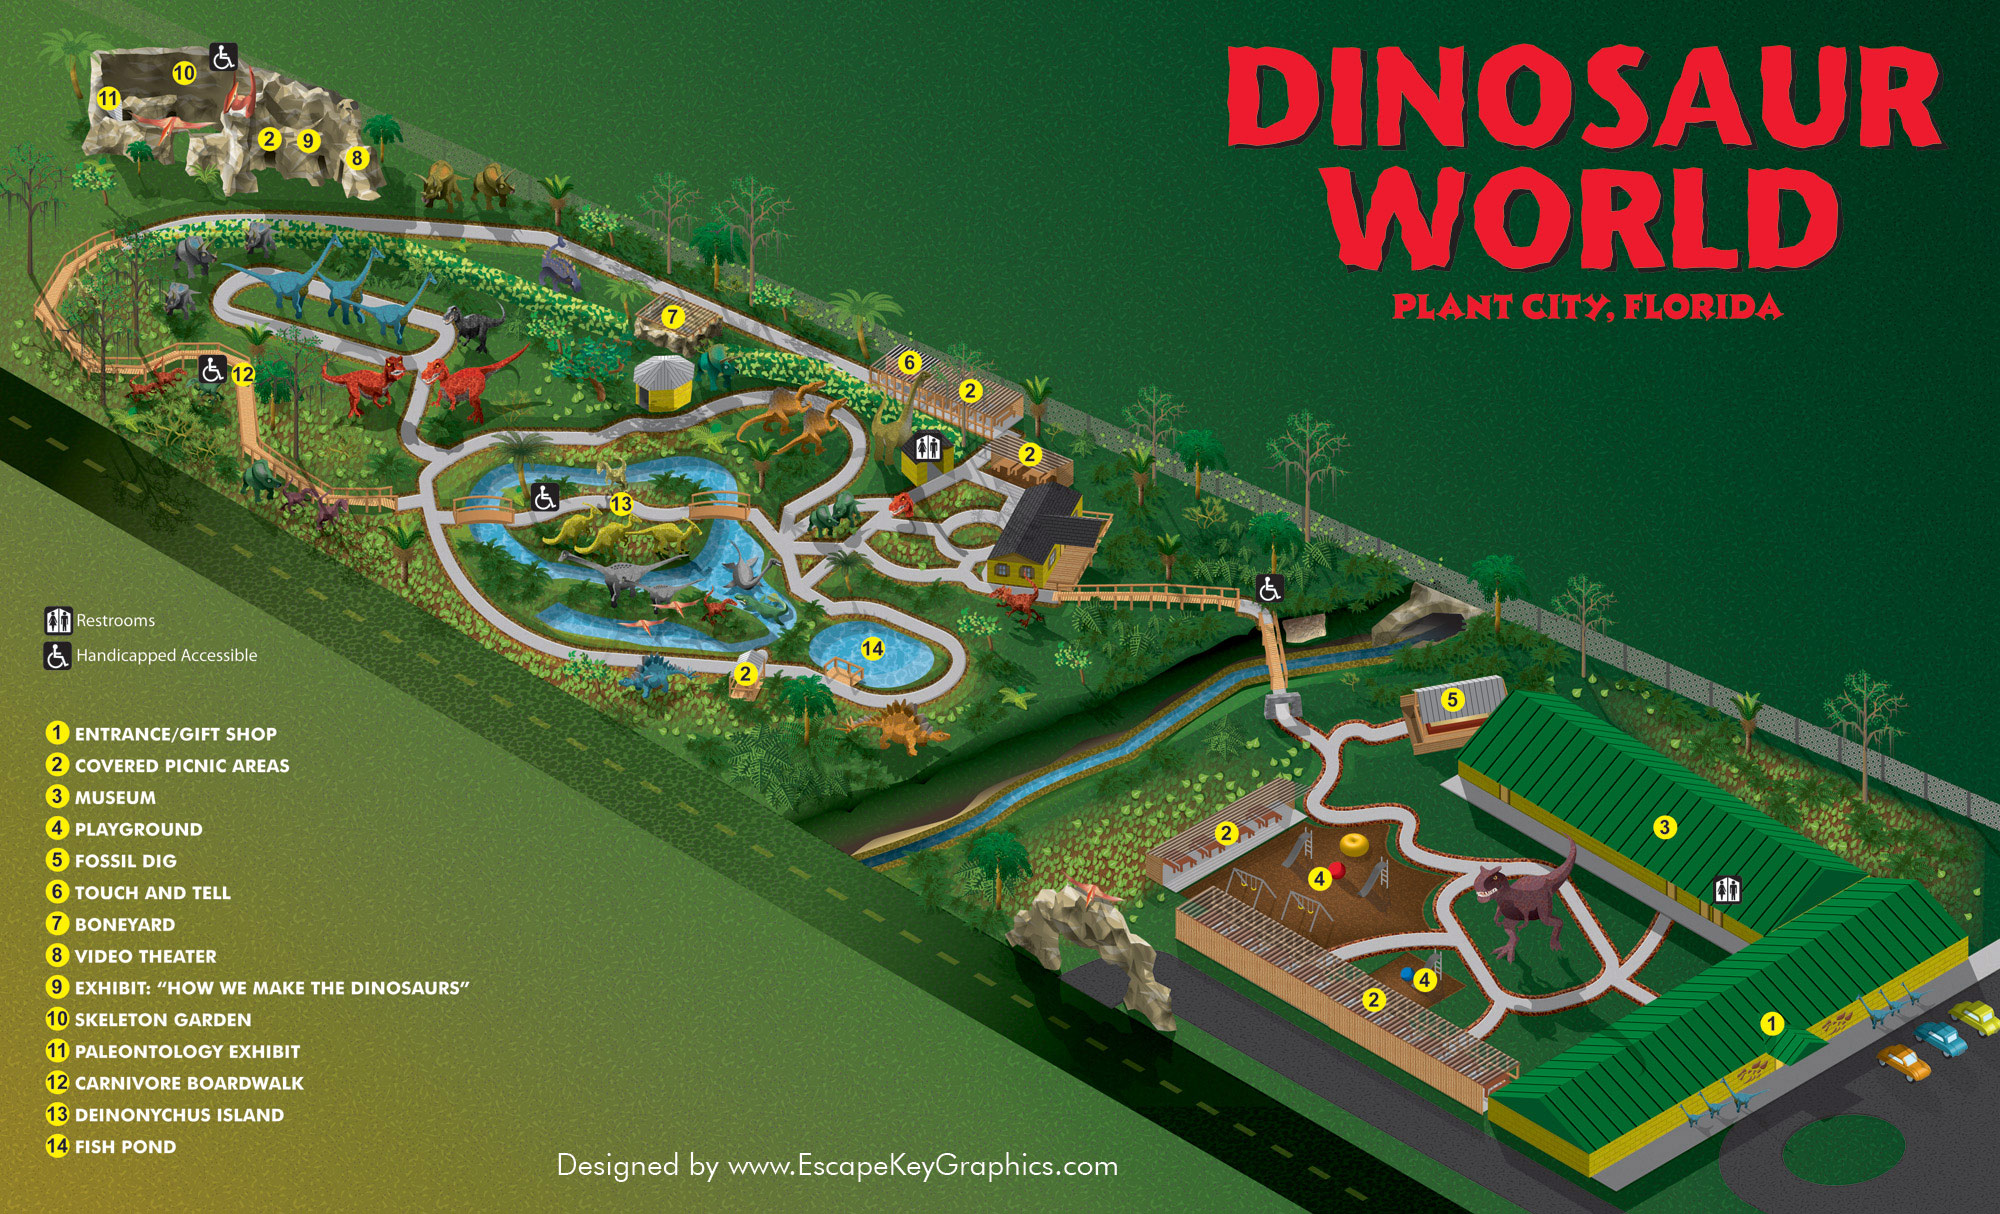 Theme Park Brochures Dinosaur World Florida - Theme Park Brochures